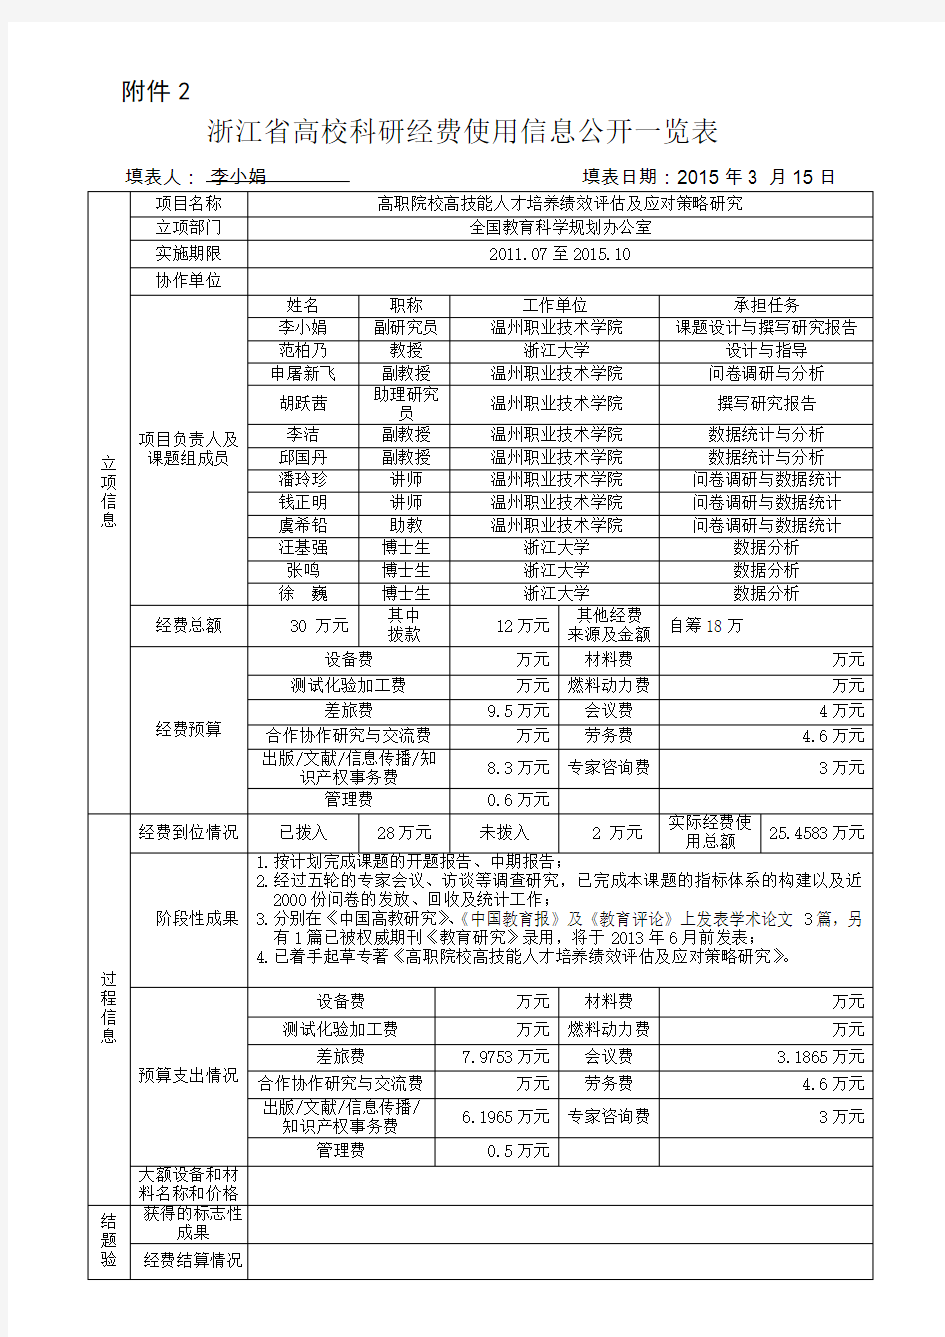 浙江高校科研经费使用信息公开一览表-温州职业技术学院